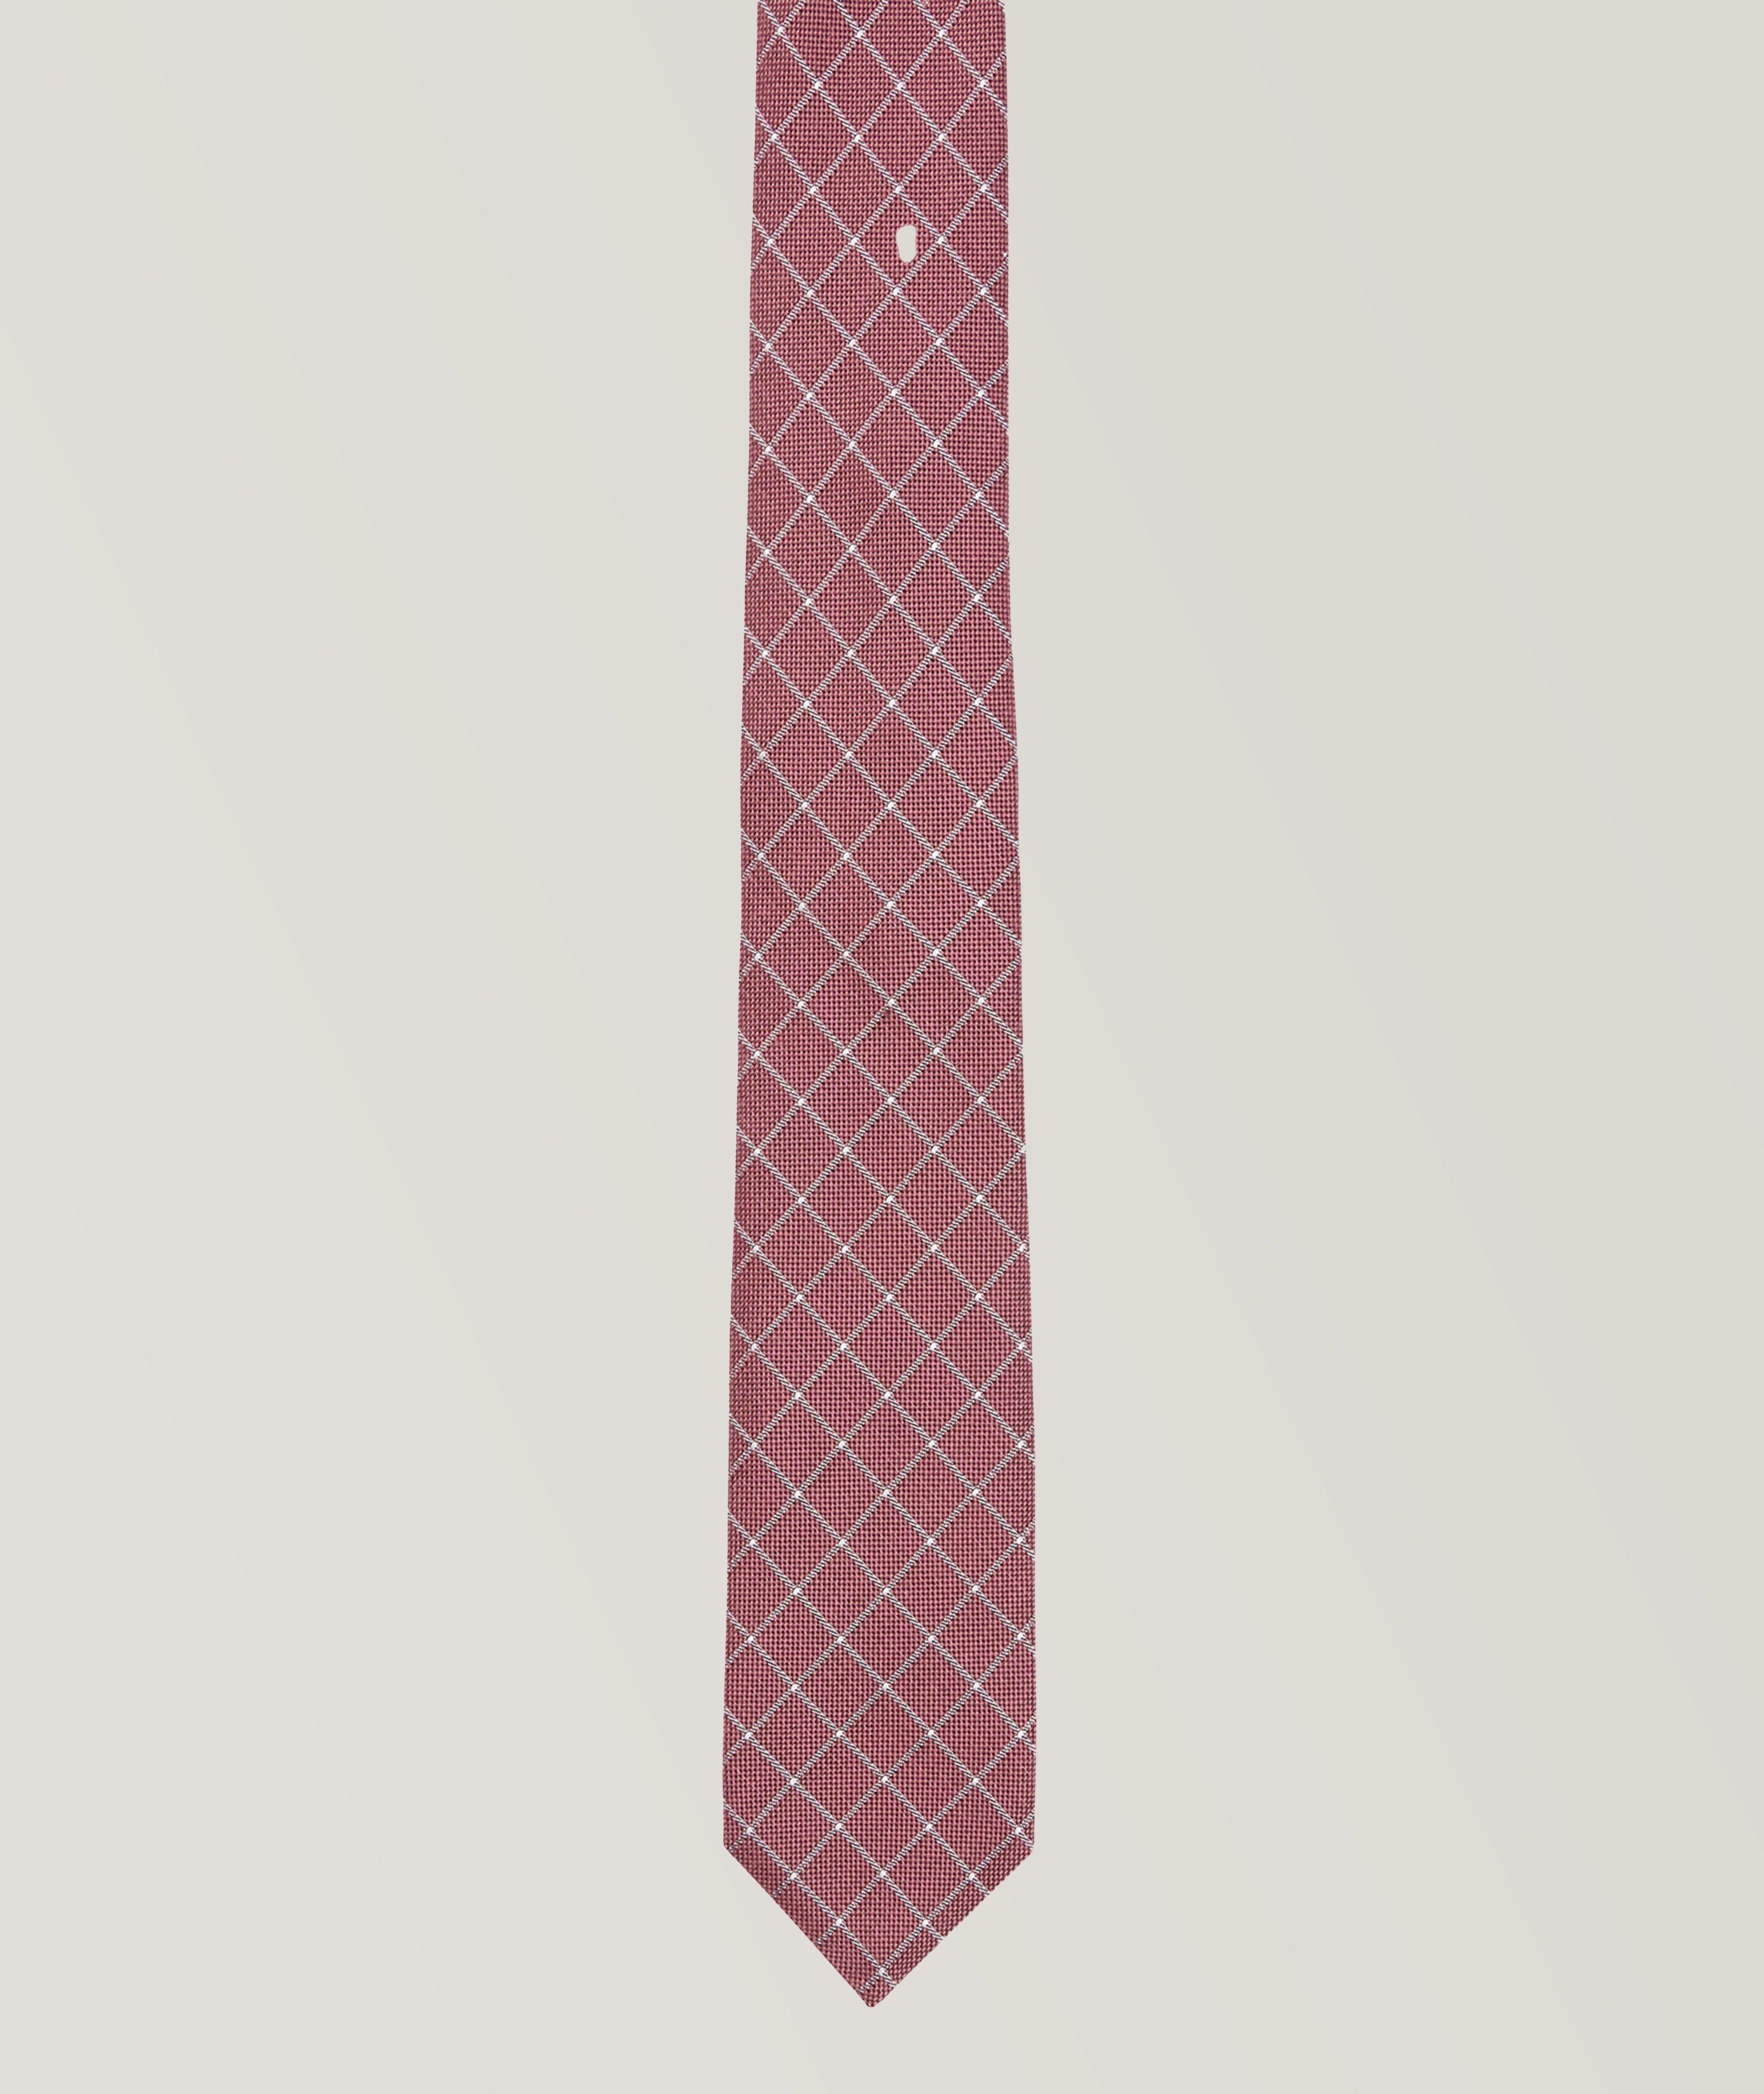 Cravate de soirée en mélange de soie à motif quadrillé image 0